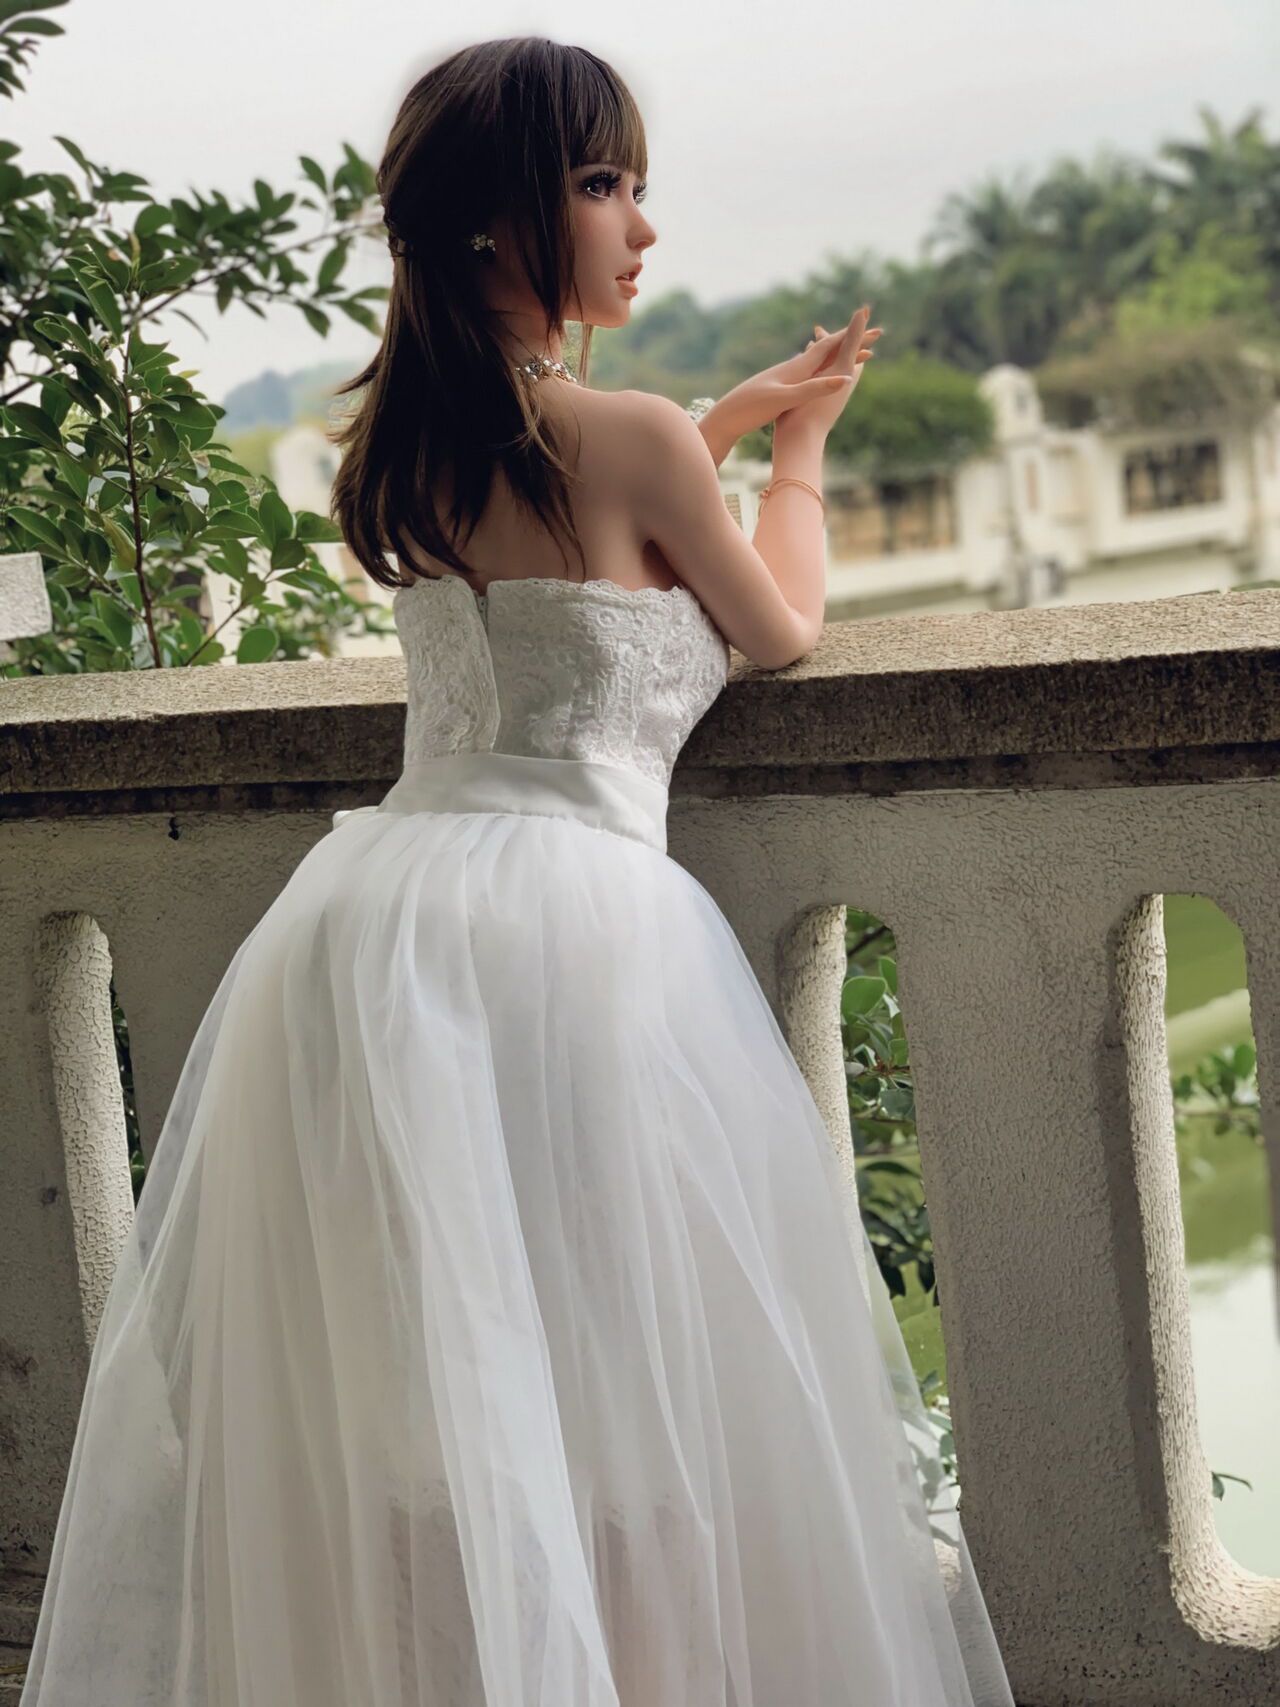 150CM HB031 Kurai Sakura-Bride in bud, to be married! by QIN 25